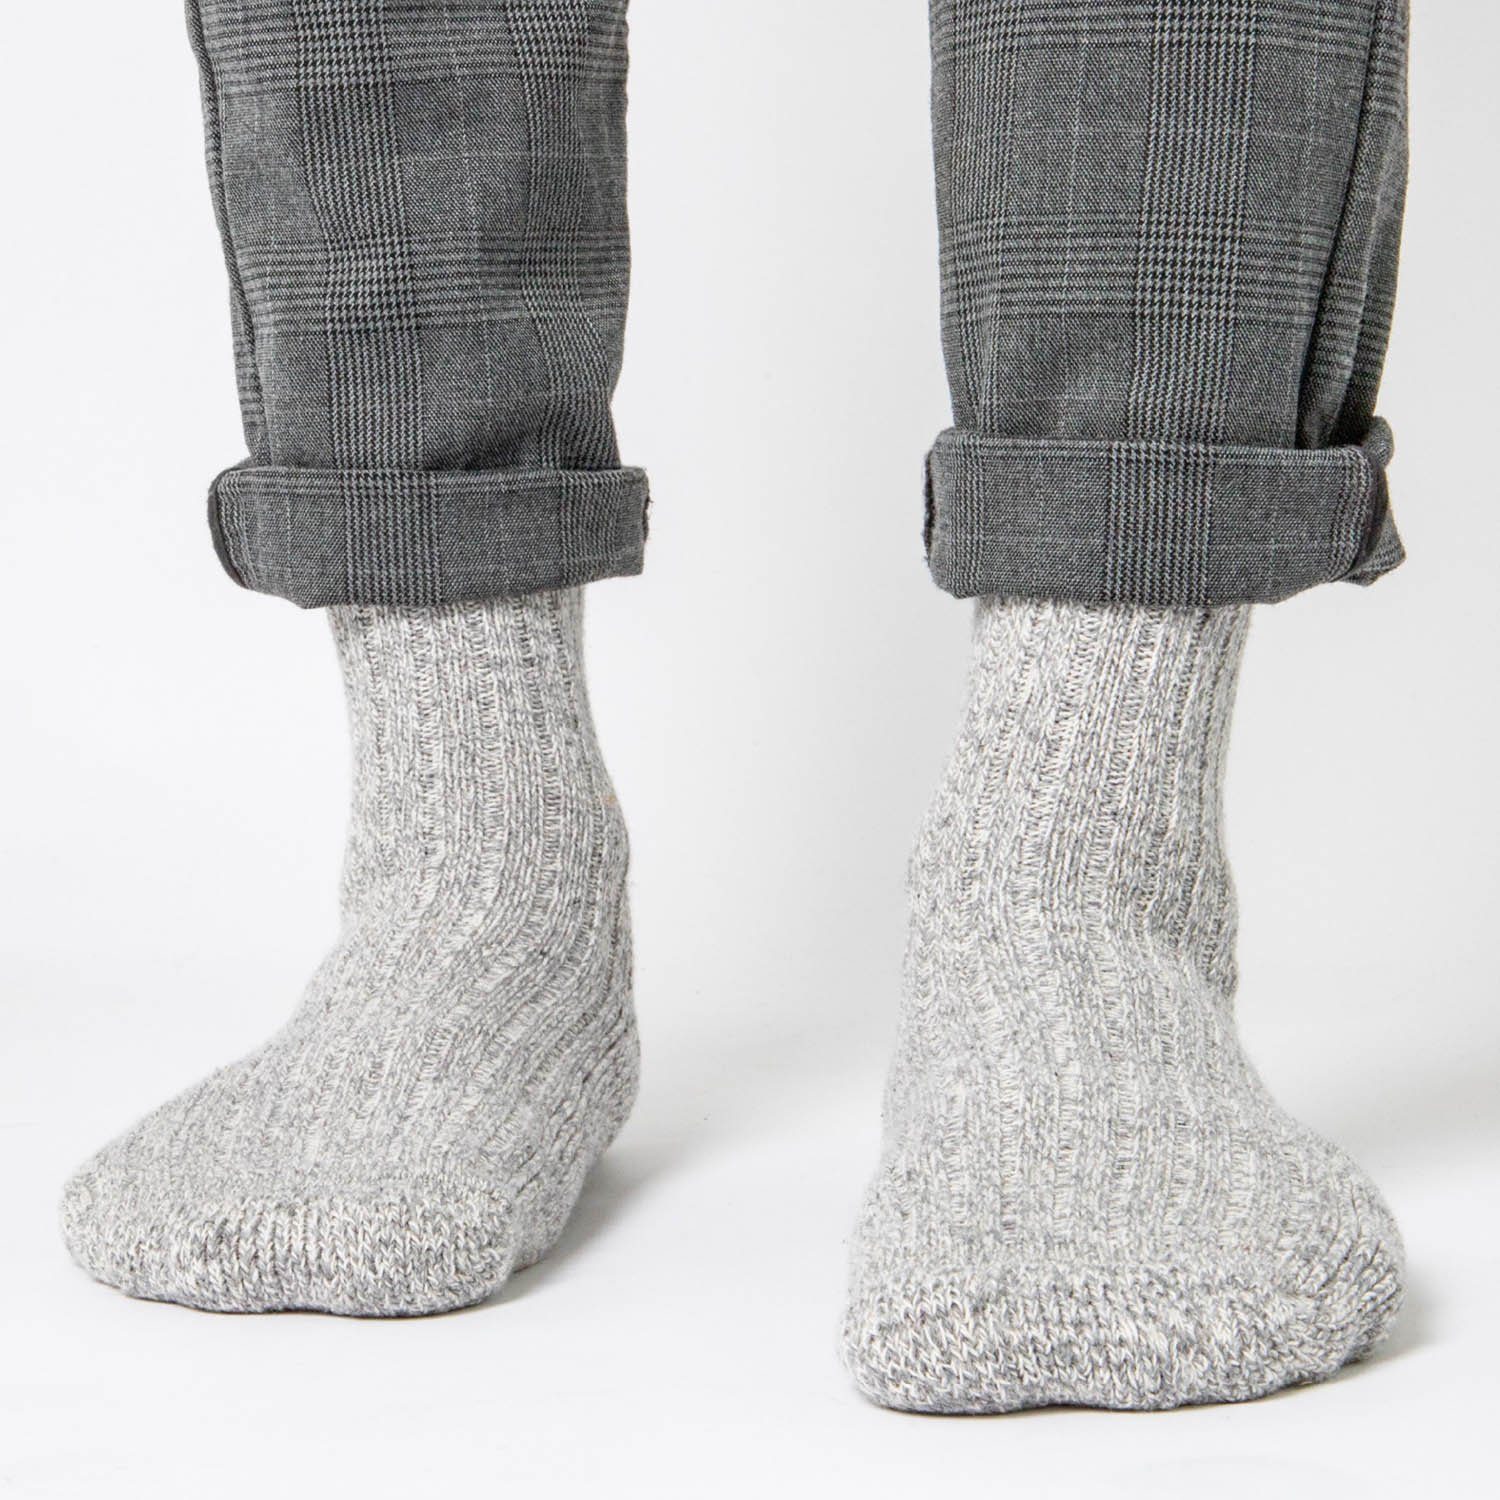 Herren Finn) OCCULTO Norwegersocken Pack Socken (Modell: Norweger Occutlo Anthra 6er (6-Paar)